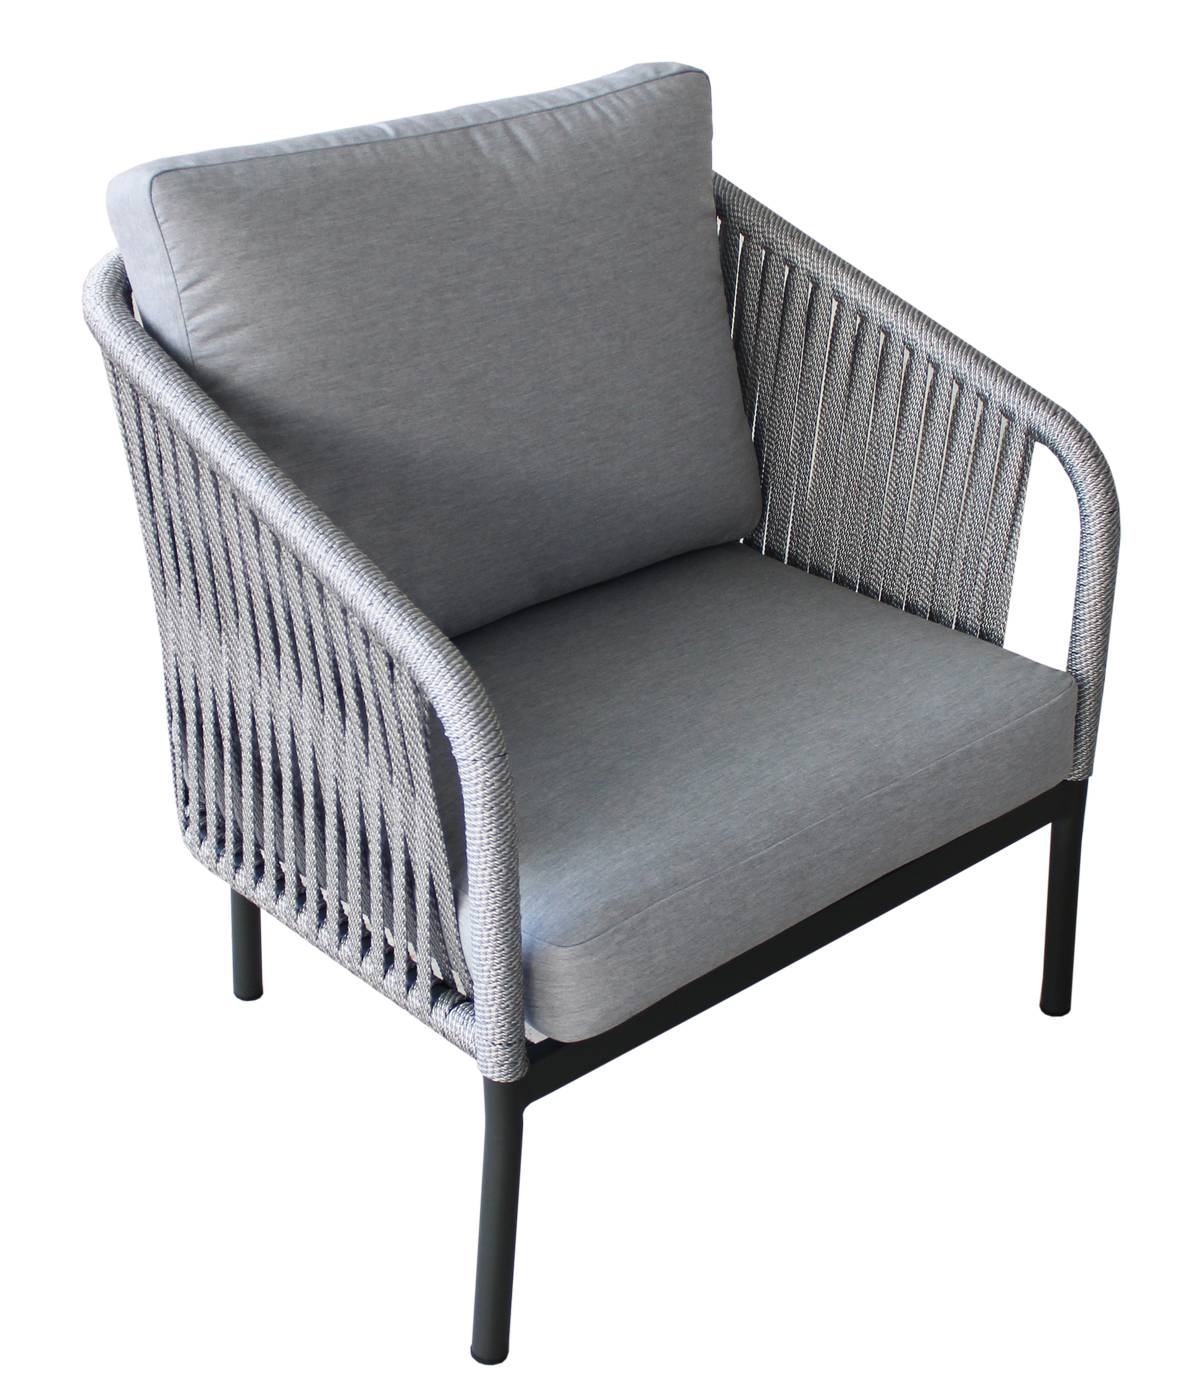 Set Cuerda Yina-8 - Conjunto aluminio color antracita y cuerda color gris: 1 sofá de 3 plazas + 2 sillones + 1 mesa de centro.